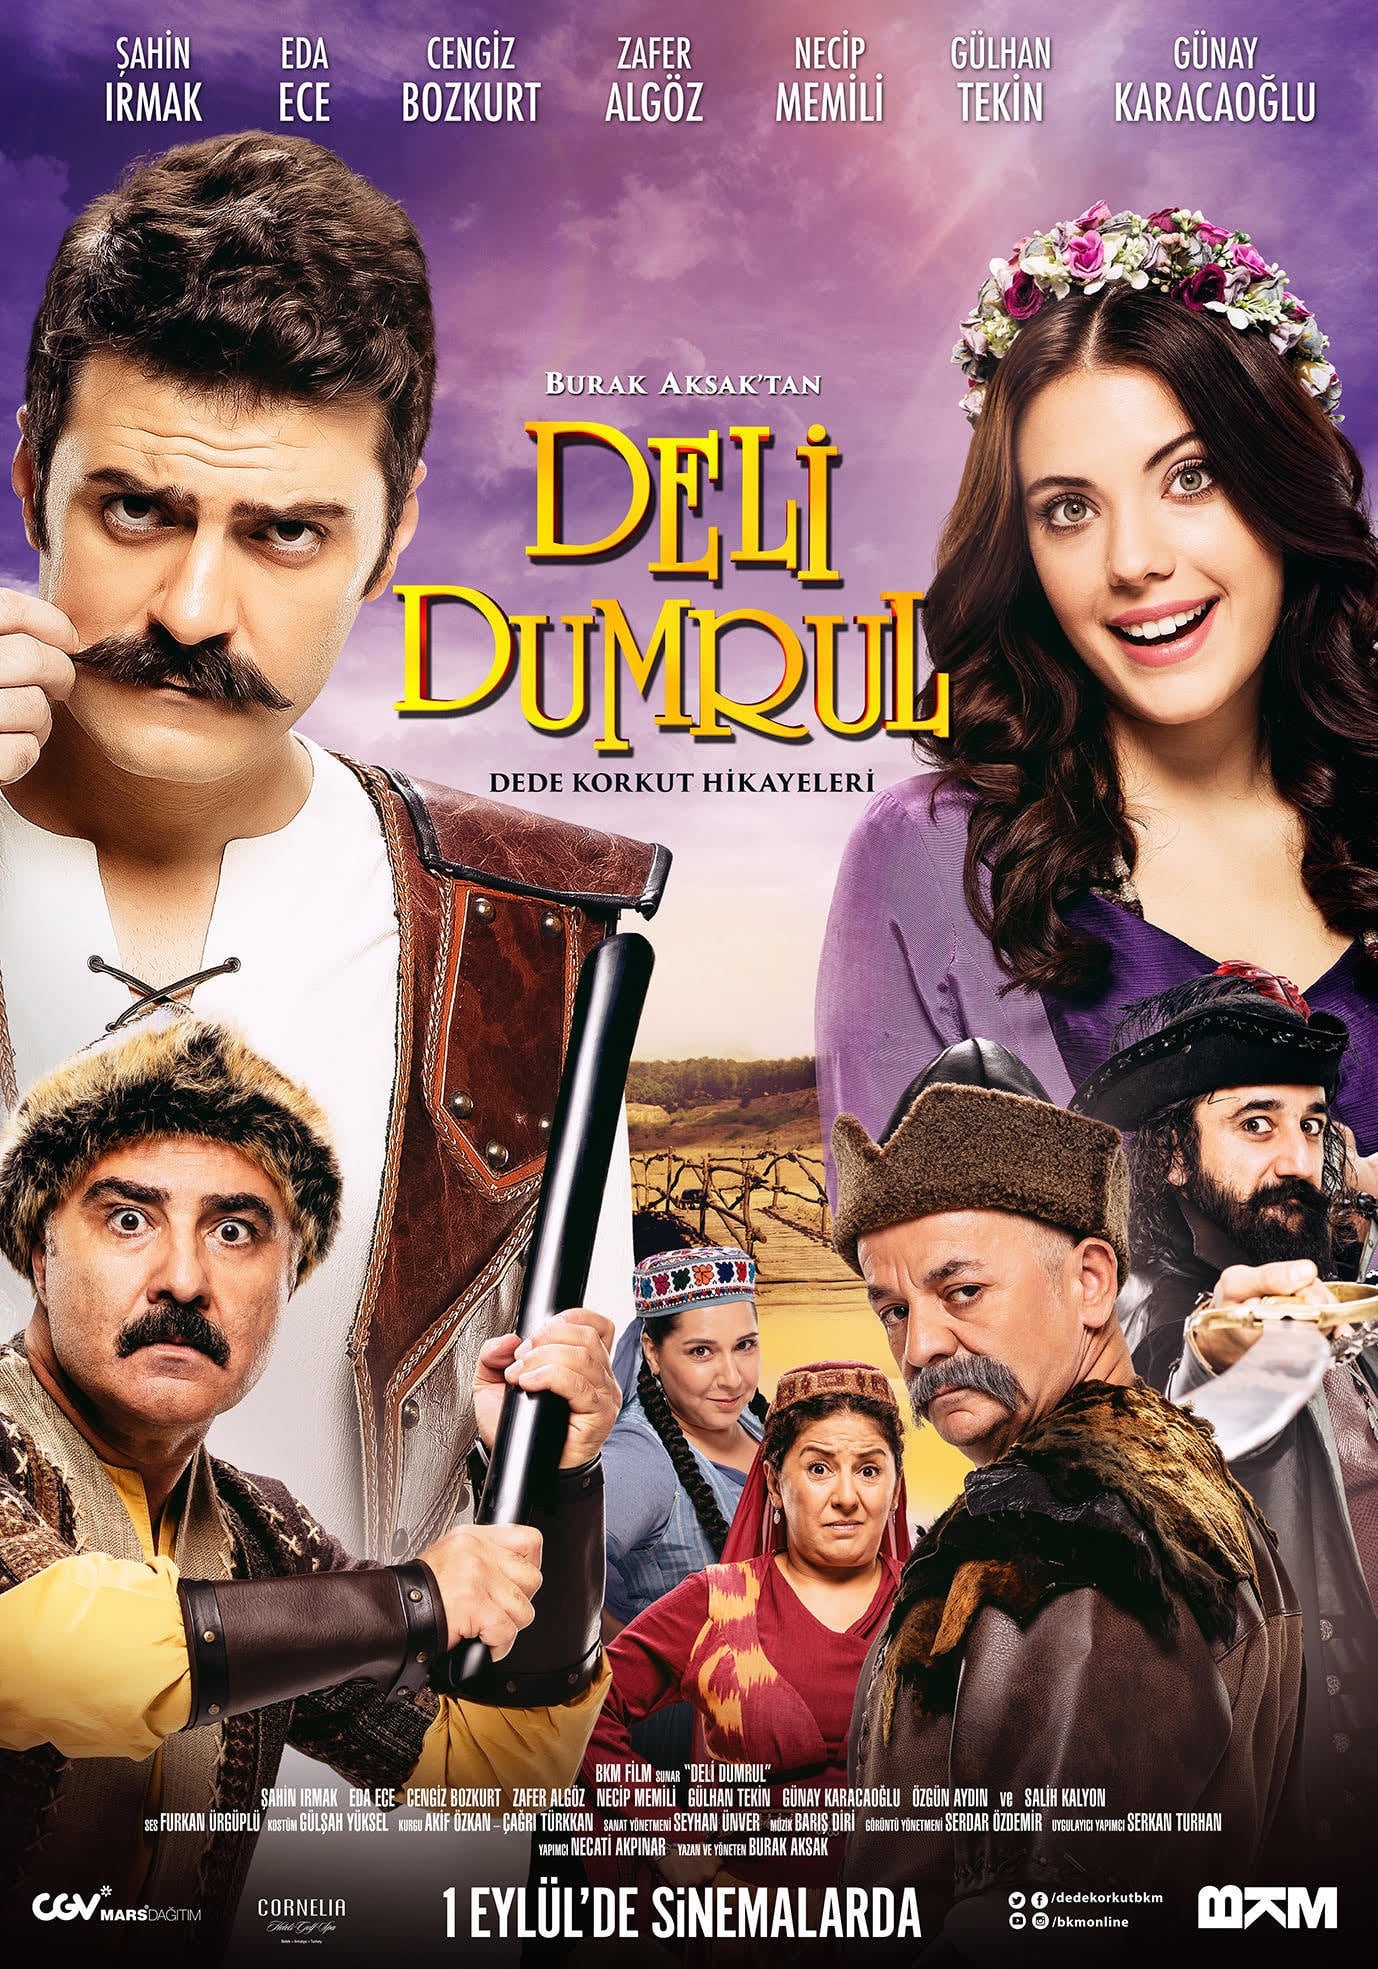 Deli Dumrul (2017) Poster #1